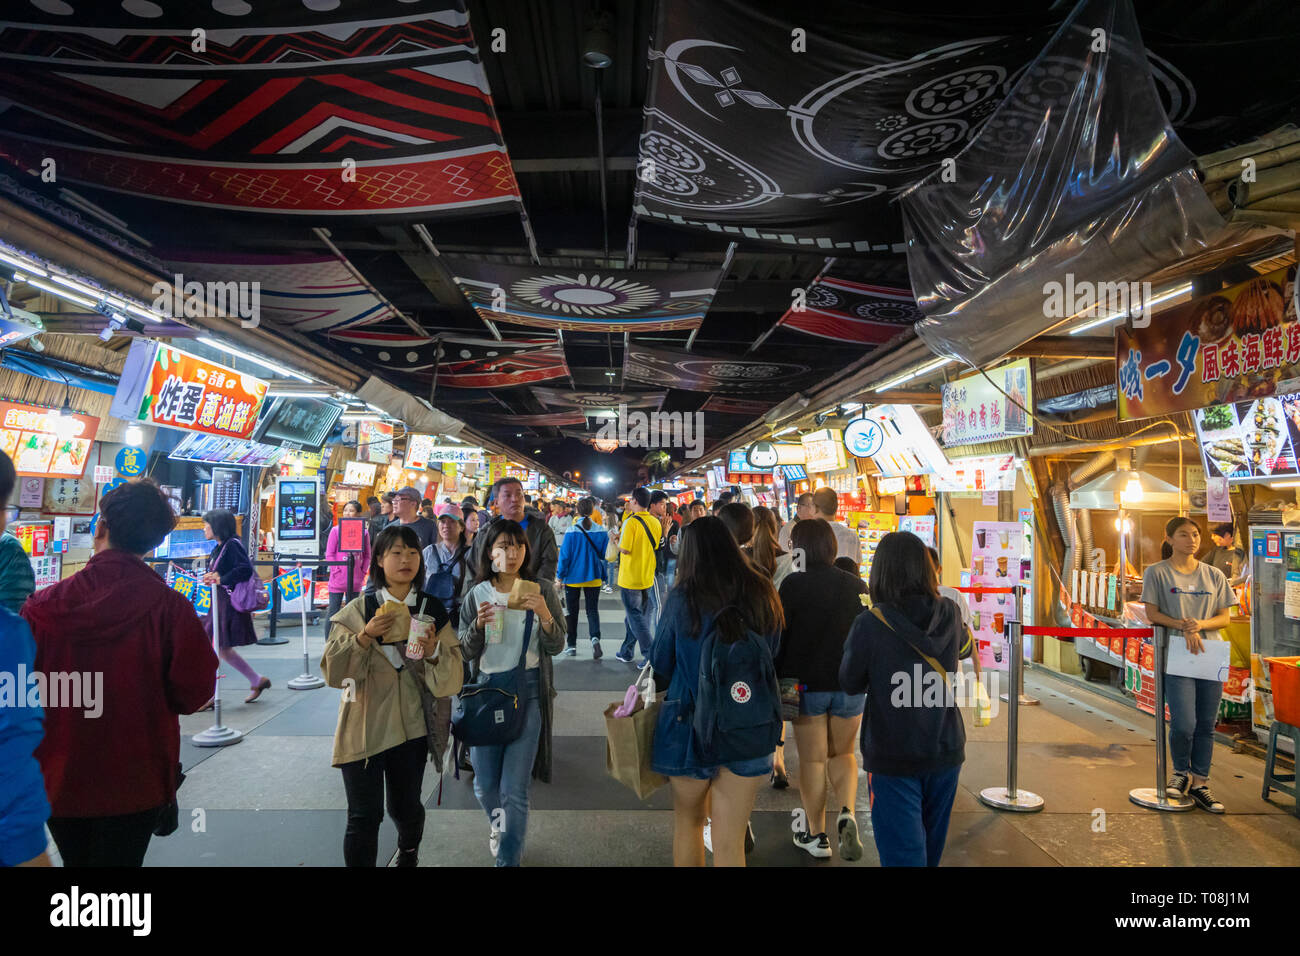 Hualien, Taiwan - März 2019: Menschen wandern in der Nacht Markt in Hualien City, Taiwan. Dieser Ort ist beliebt bei Einheimischen und Touristen. Stockfoto